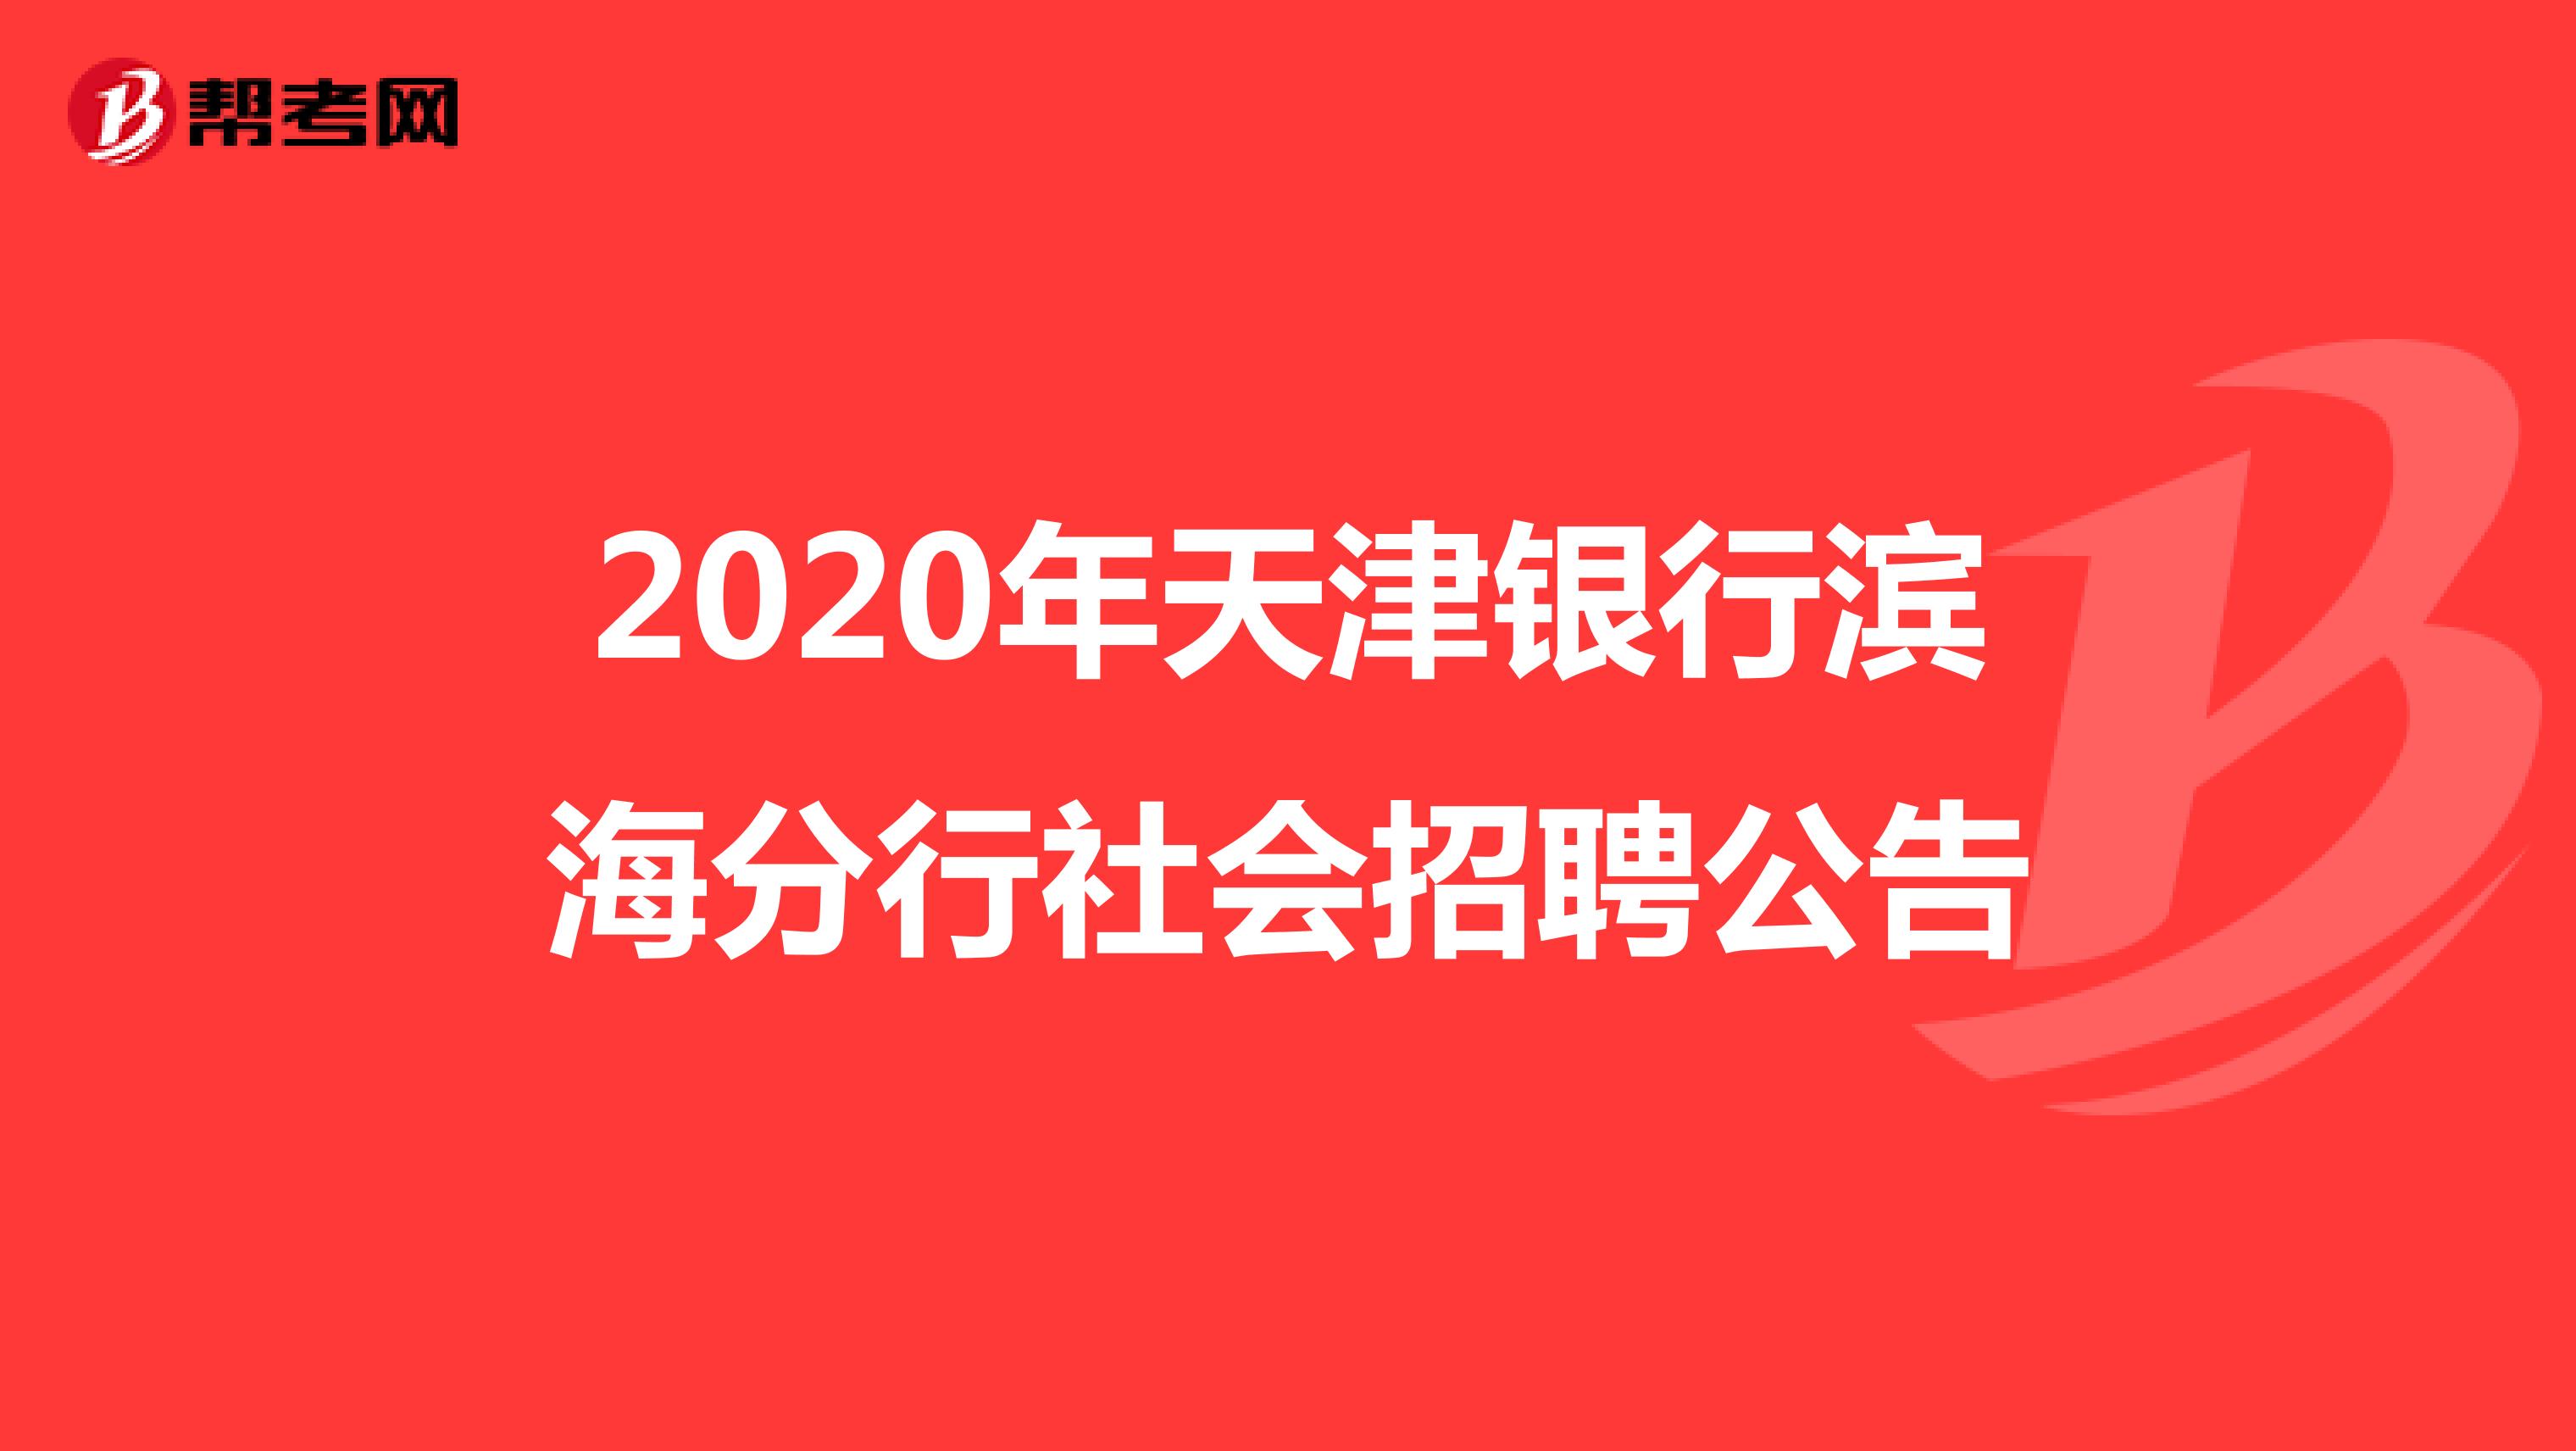 2020年天津银行滨海分行社会招聘公告